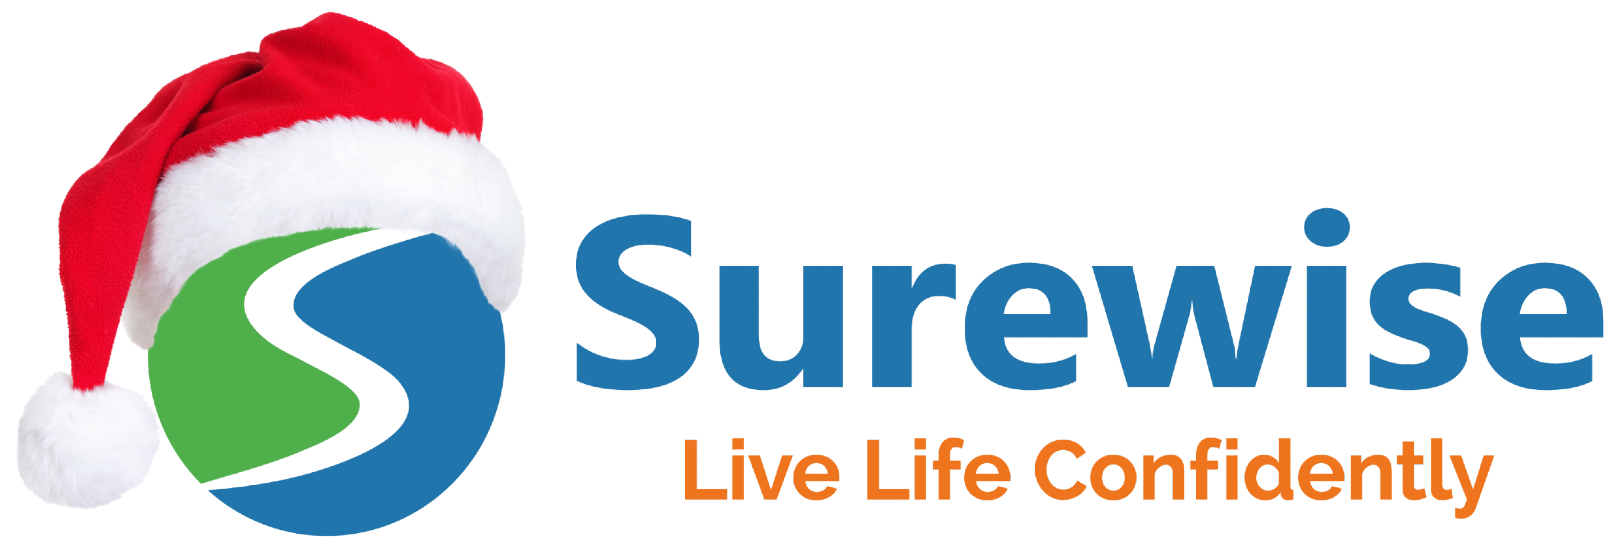 Surewise.com - Live Life Confidently